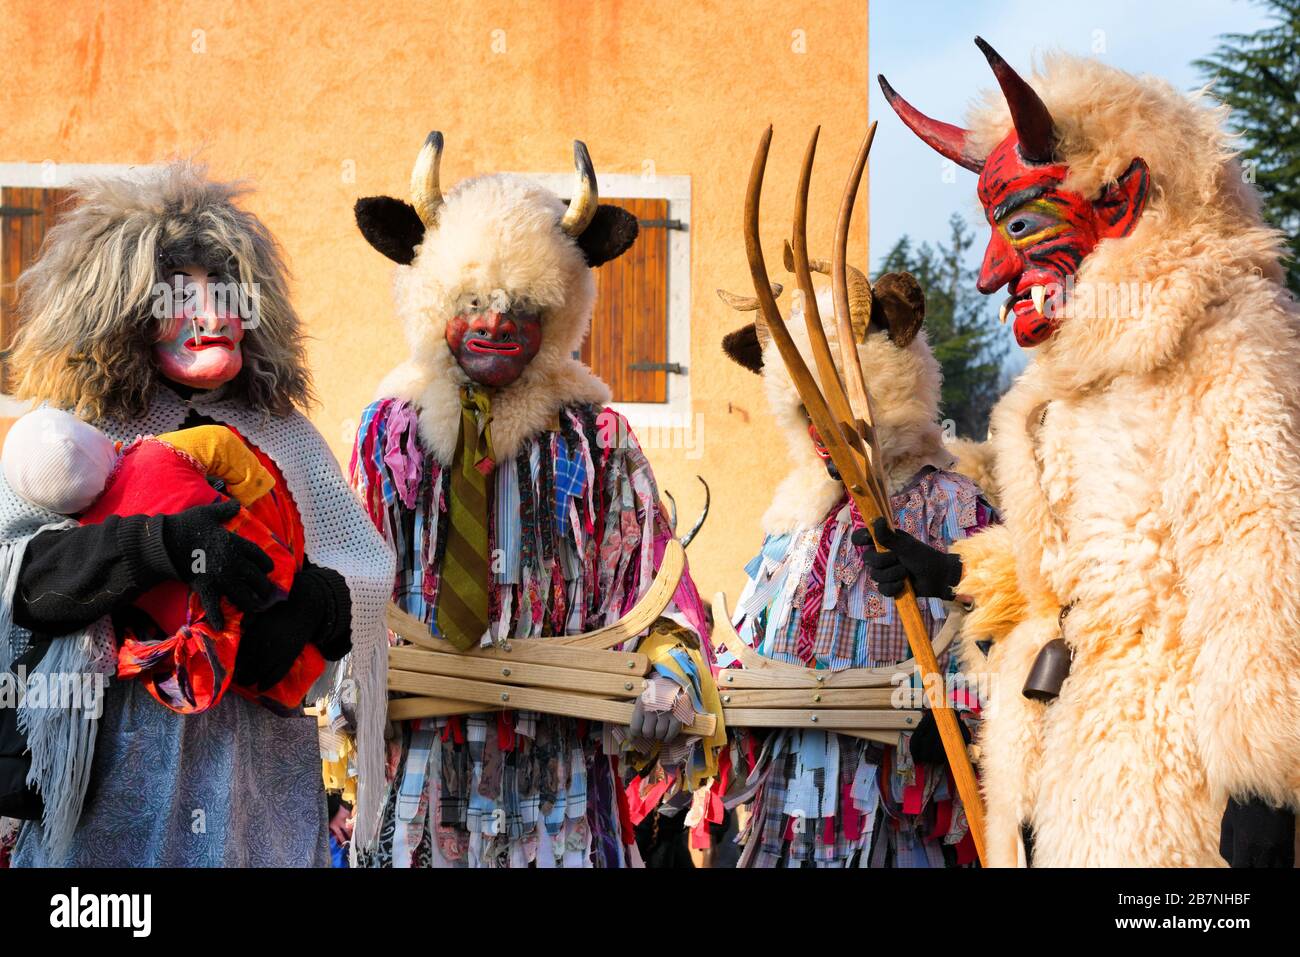 Nicht identifizierte Menschen, die heidnische Kostüme und Masken beim Karnevalszug Pust tragen. San Pietro al Natisone, Italien. Dämonen, die auf der Straße spazieren. Stockfoto